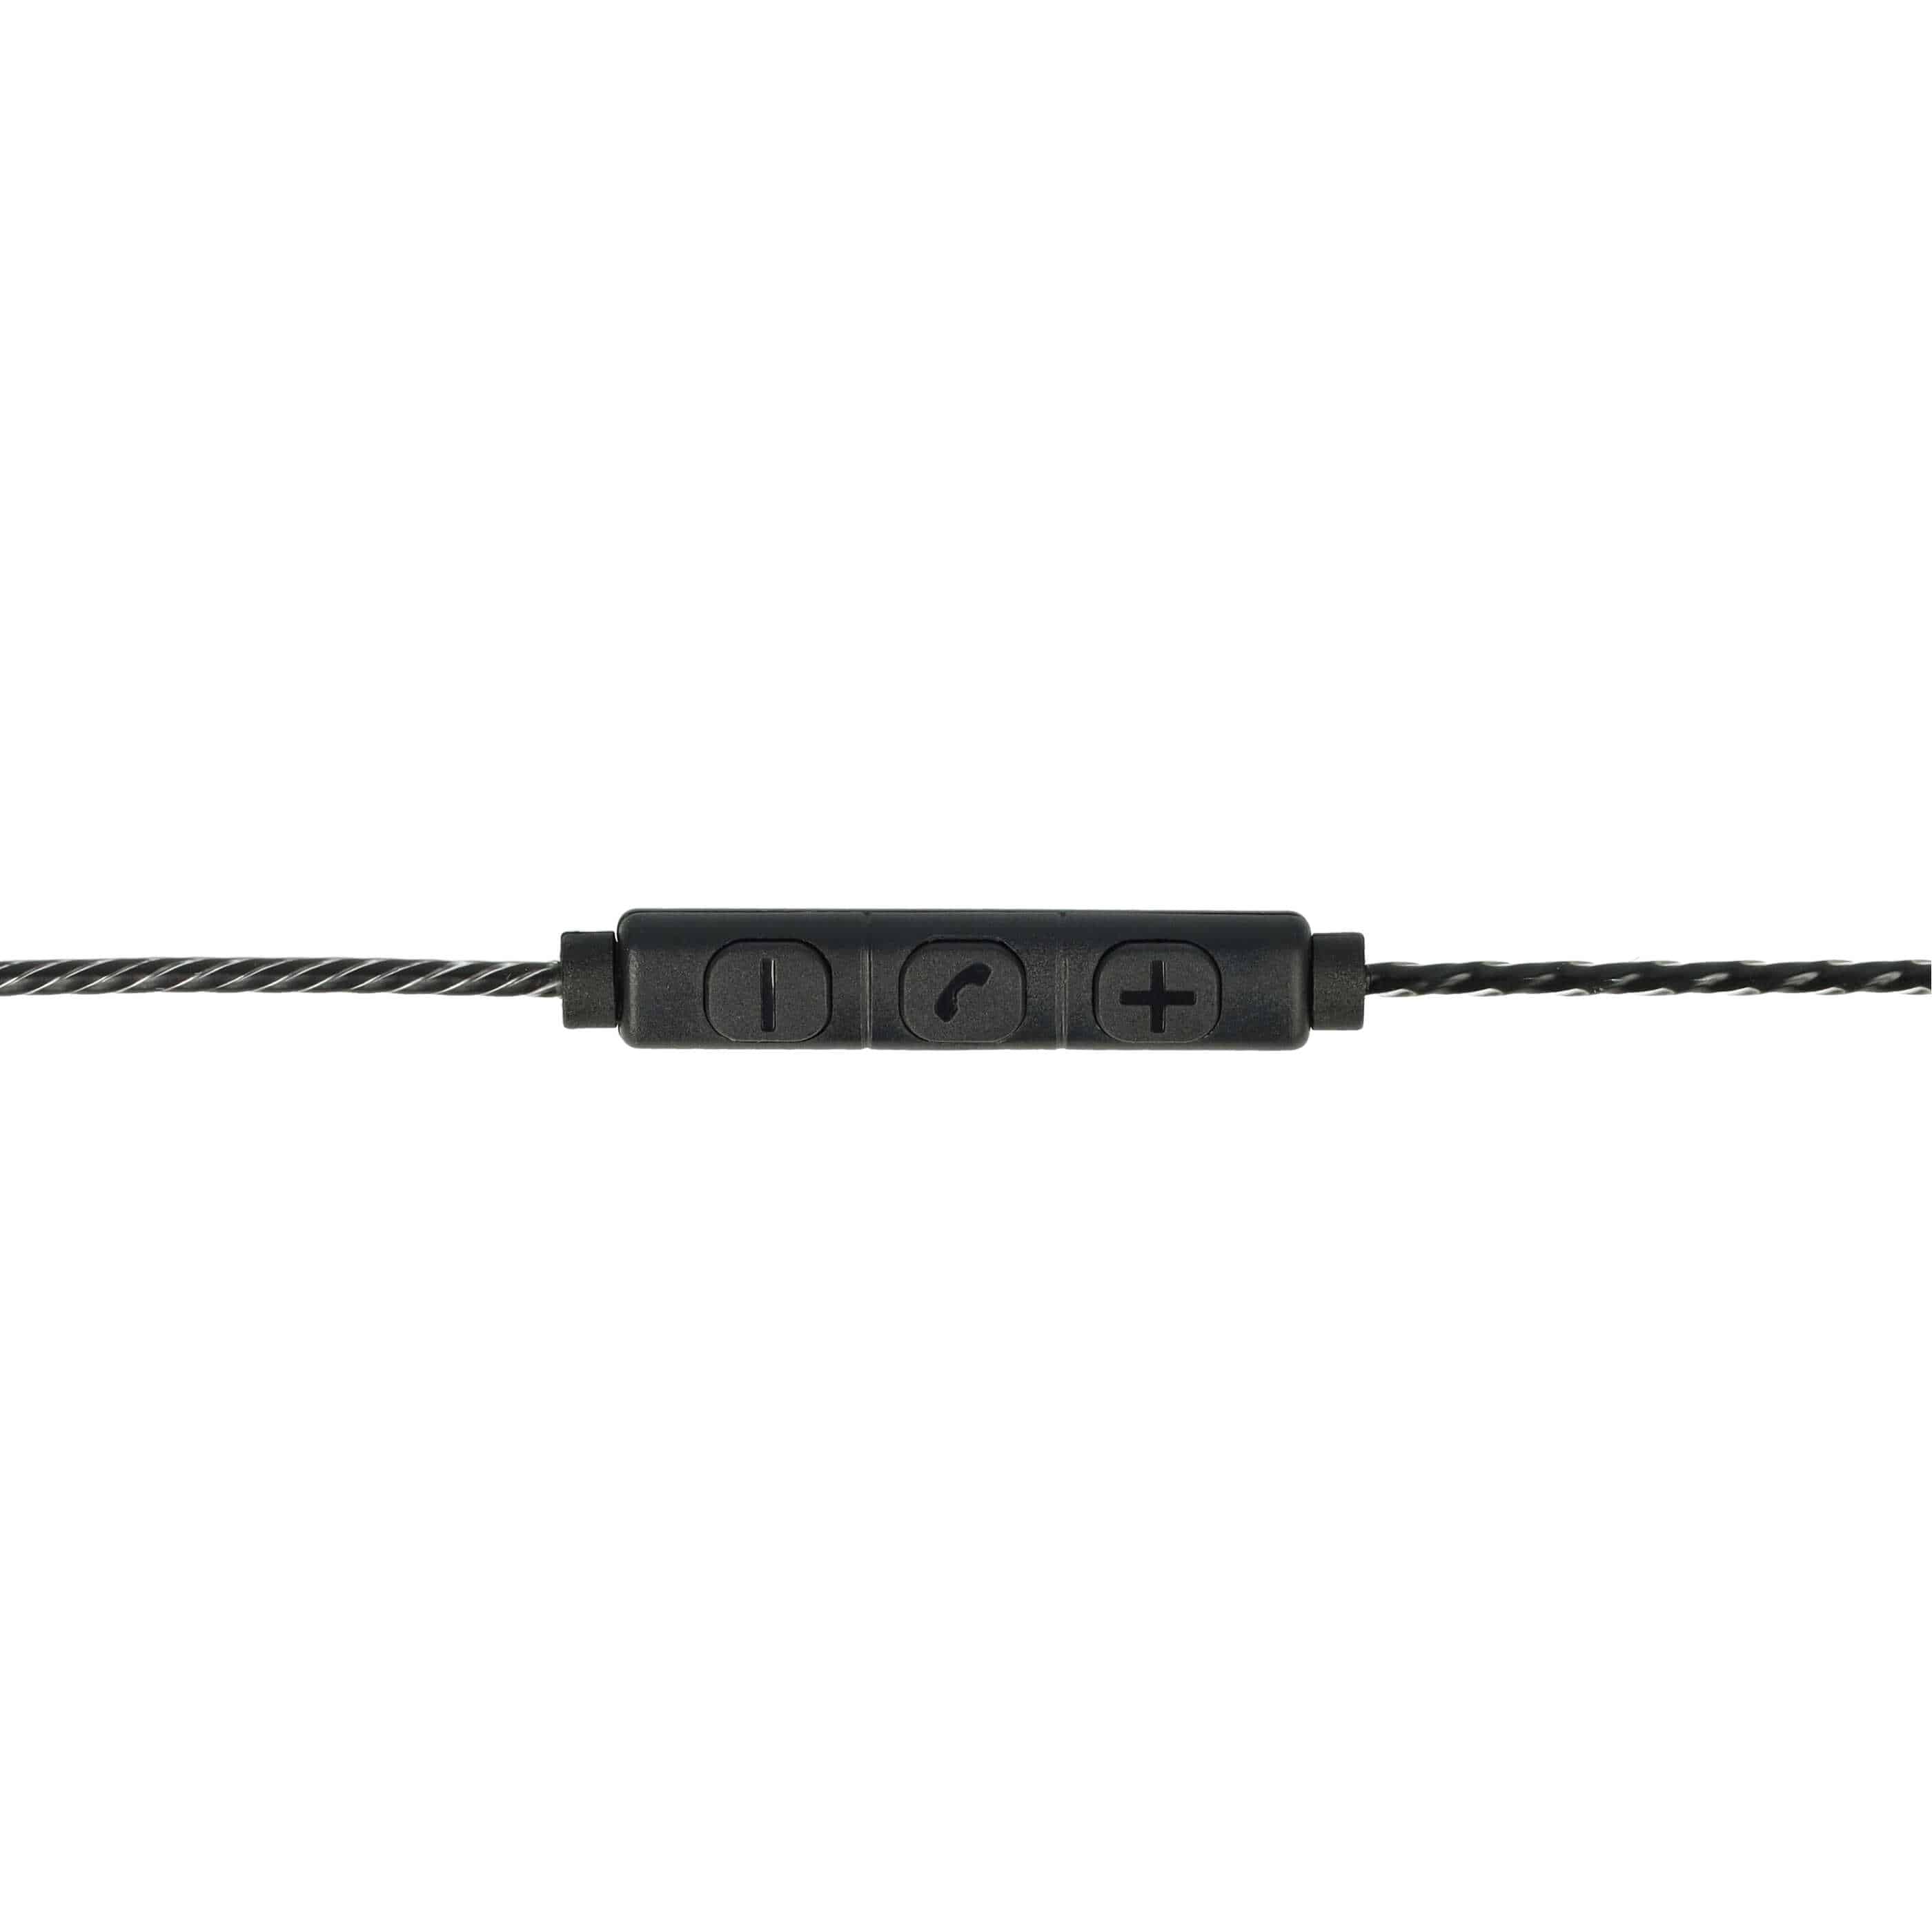 Headphones Cable suitable for Sennheiser IE8 etc., 120 cm